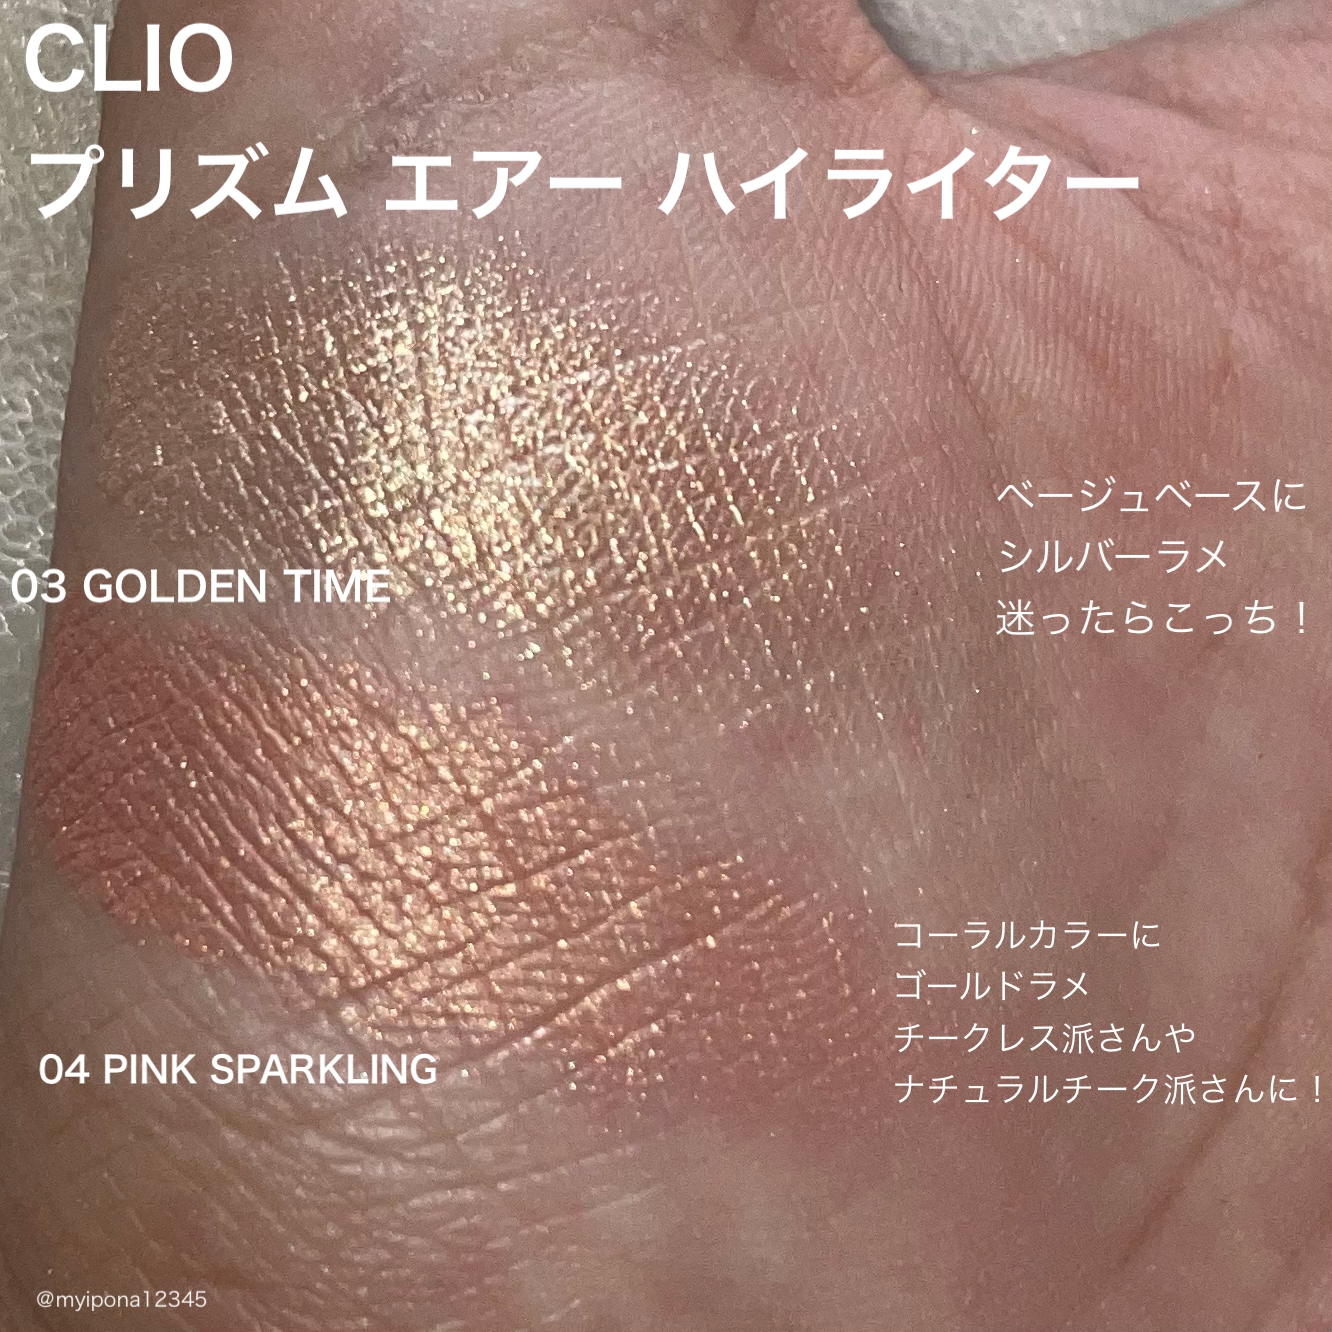 CLIO(クリオ)プリズムエアー ハイライターを使ったみぃぽなさんのクチコミ画像4